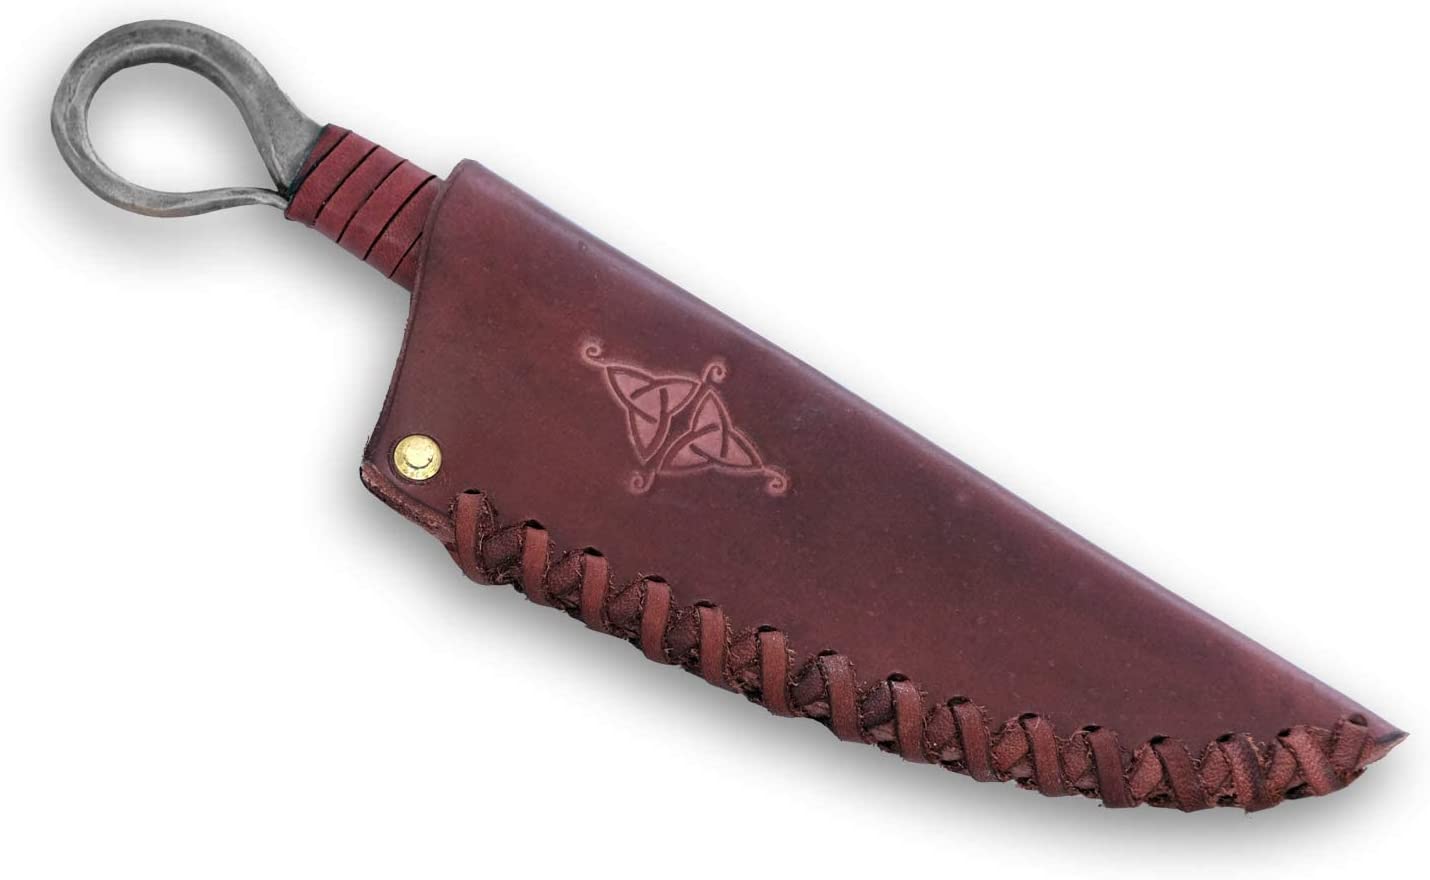 Couteau celtique forgé Perche avec fourreau